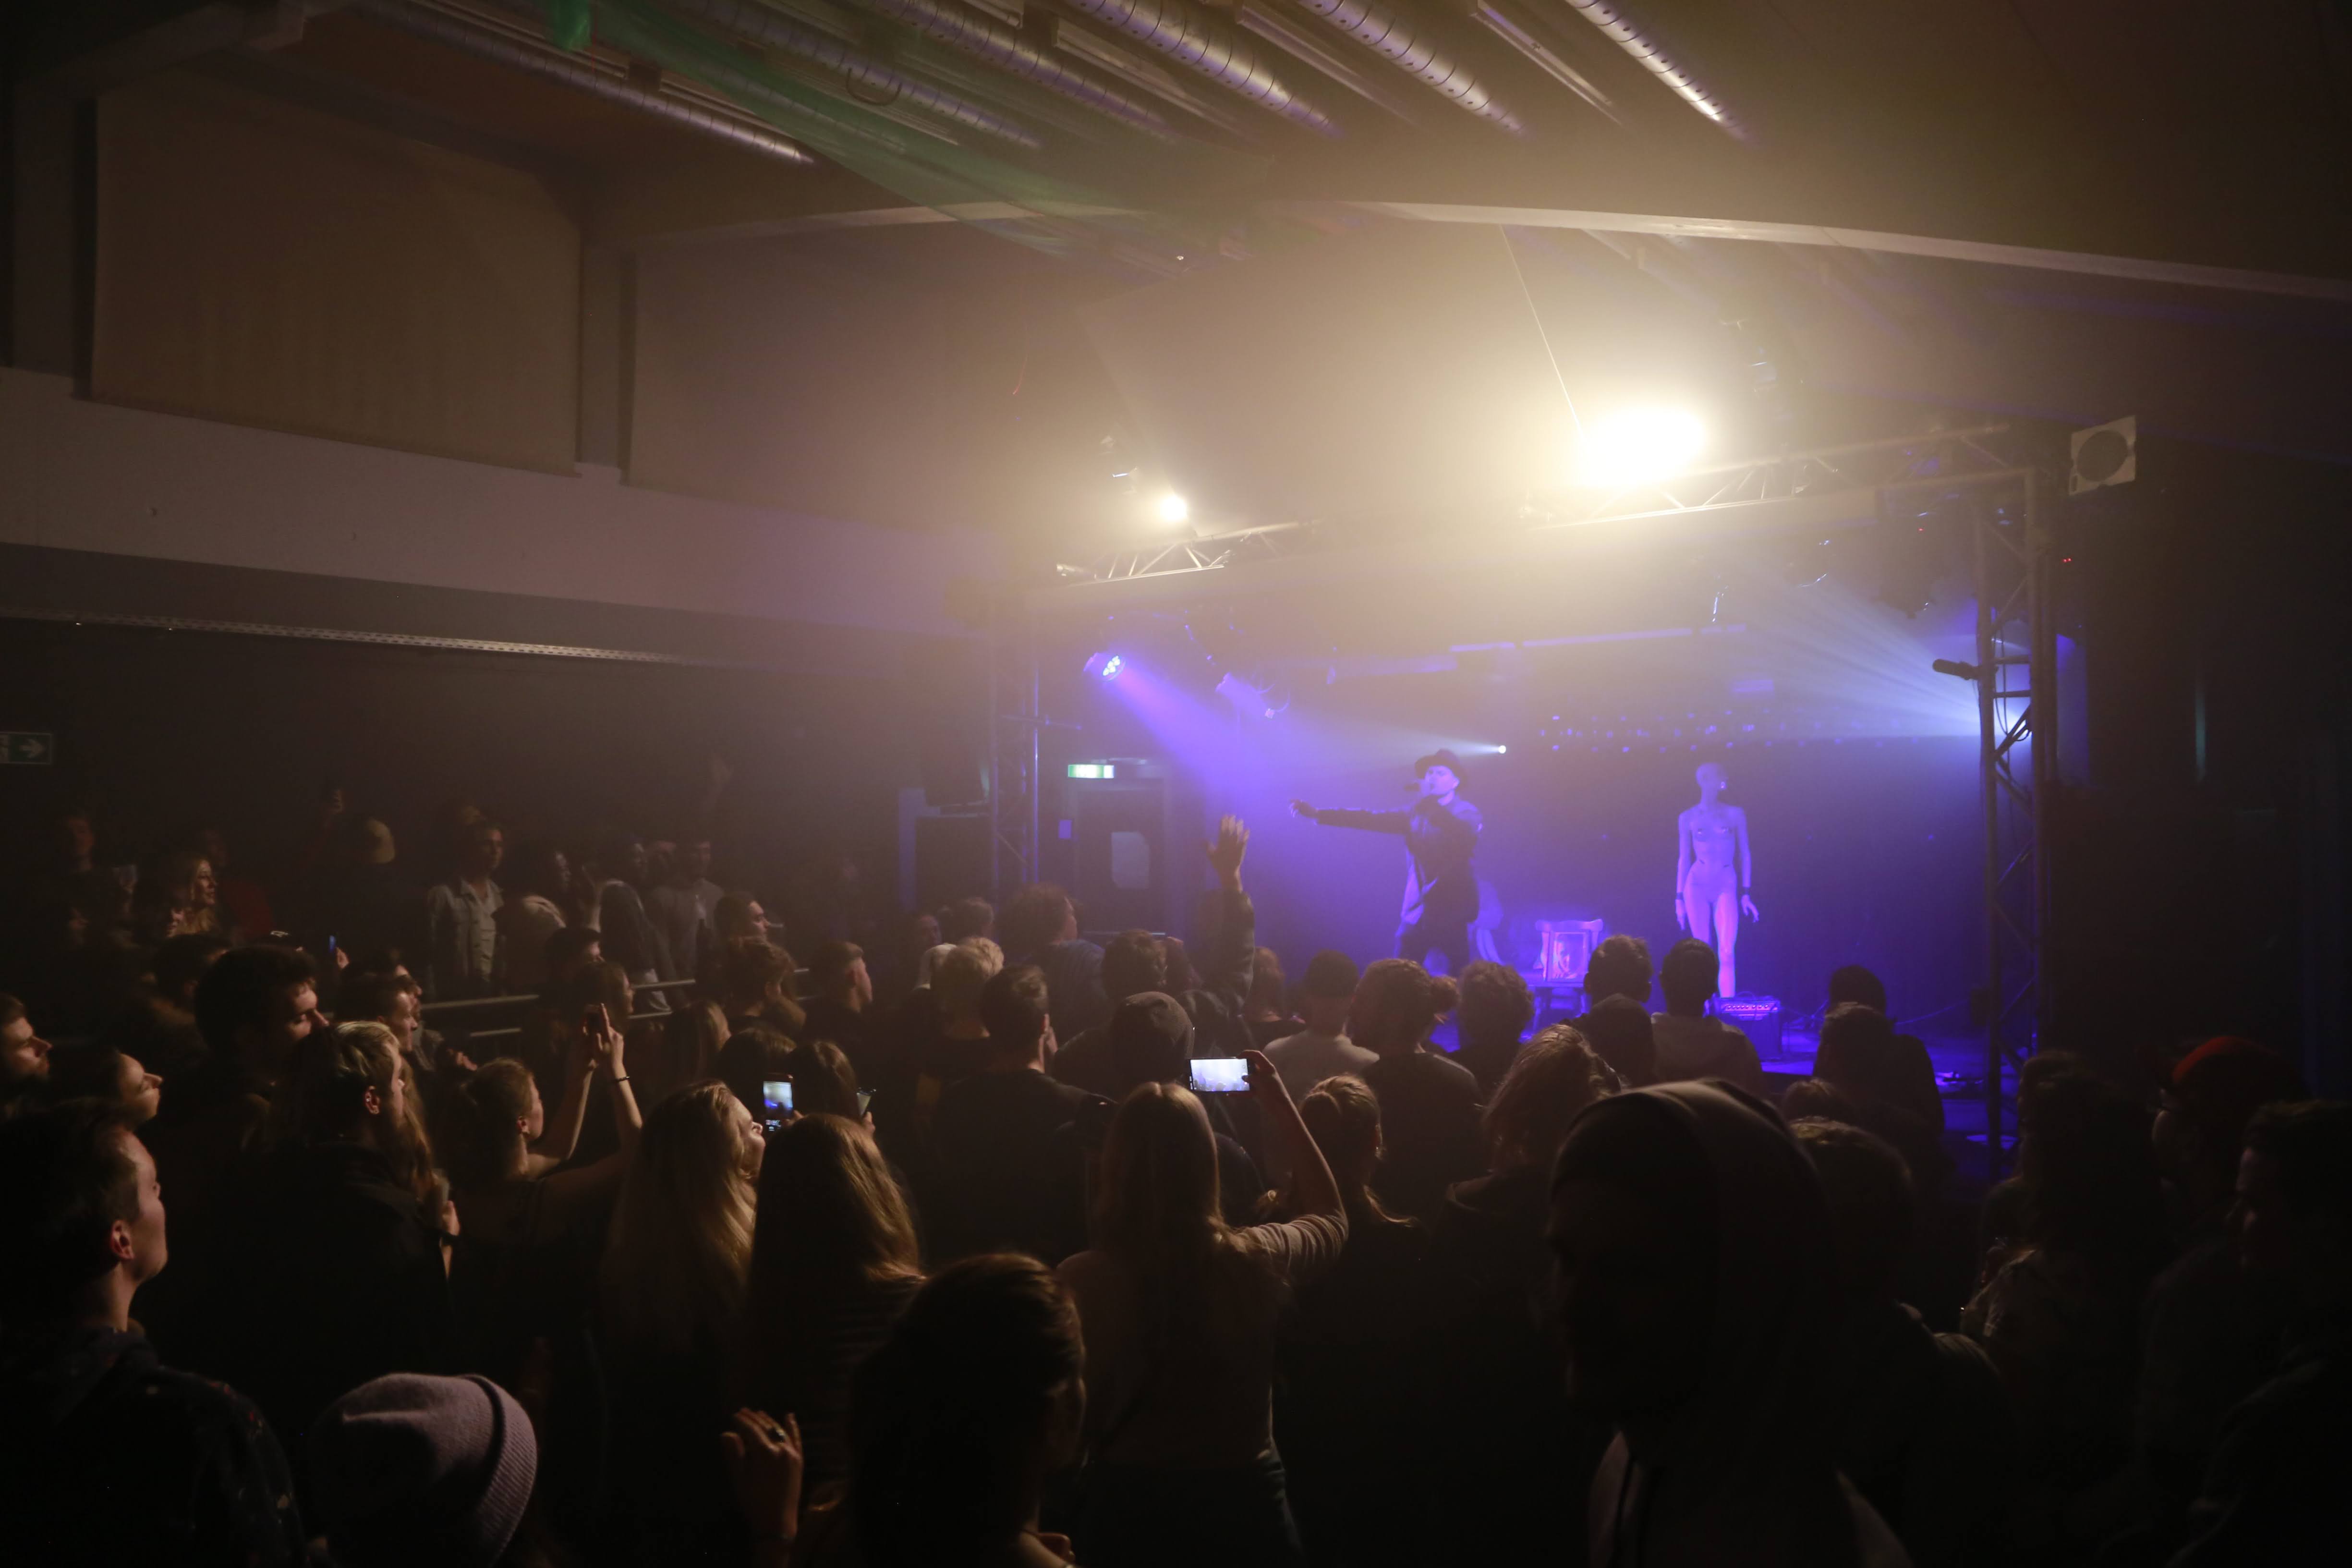 Blick von der rechten Seite auf die Bühne im V8 Venue bei einem Livekonzert